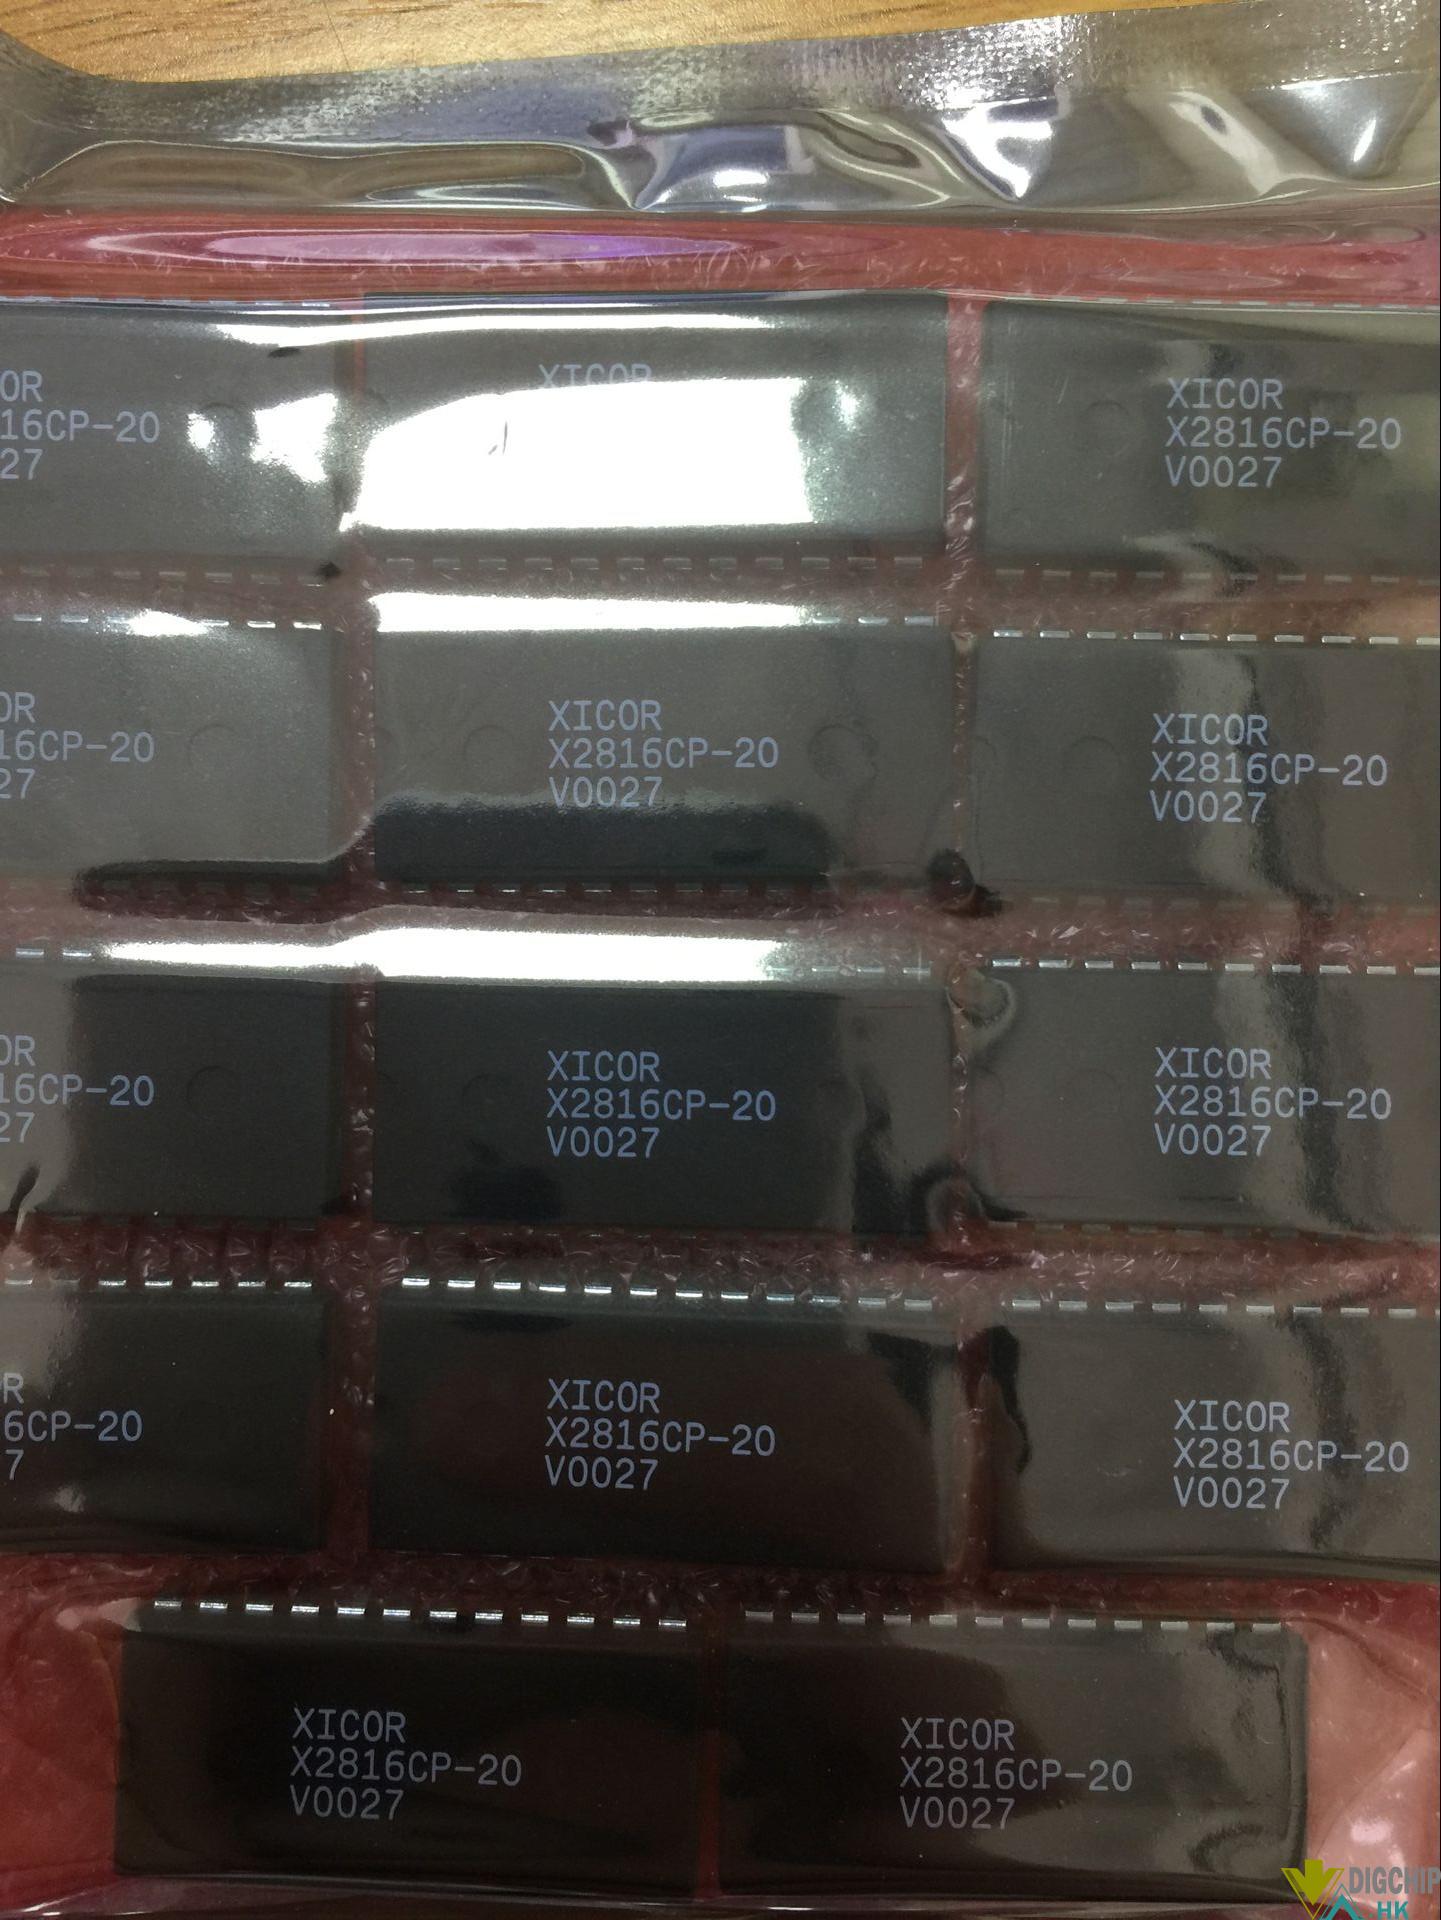 EEPROM X2816CP-20 2Kx8, 200ns